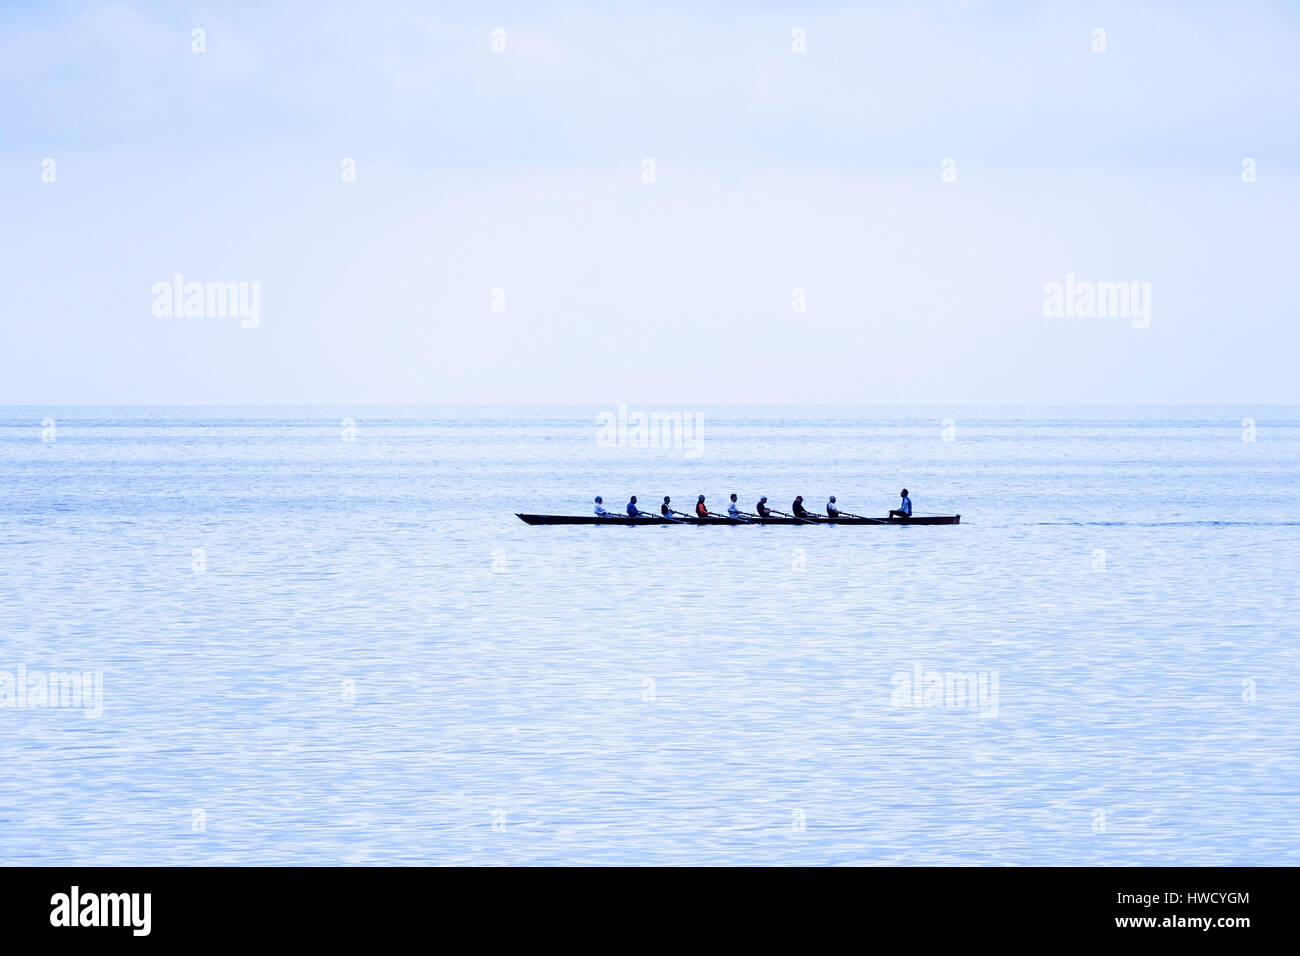 Une rame bateau avec huit rameurs et de capitaine de la mer, Ein Ruderboot mit acht und Ruderern Steuermann am Meer Banque D'Images